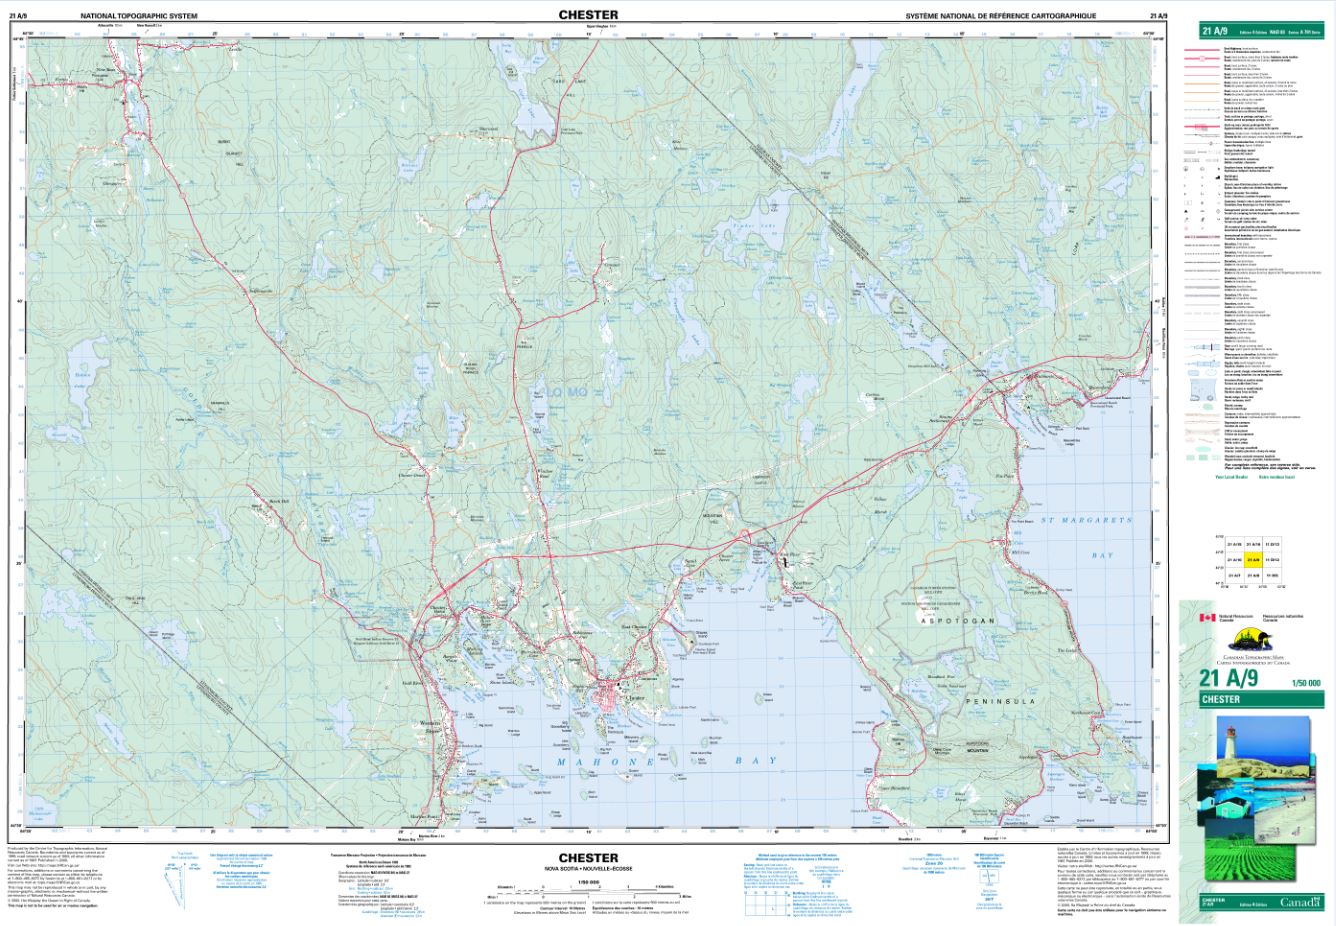 21A/09 Chester Topographic Map Nova Scotia